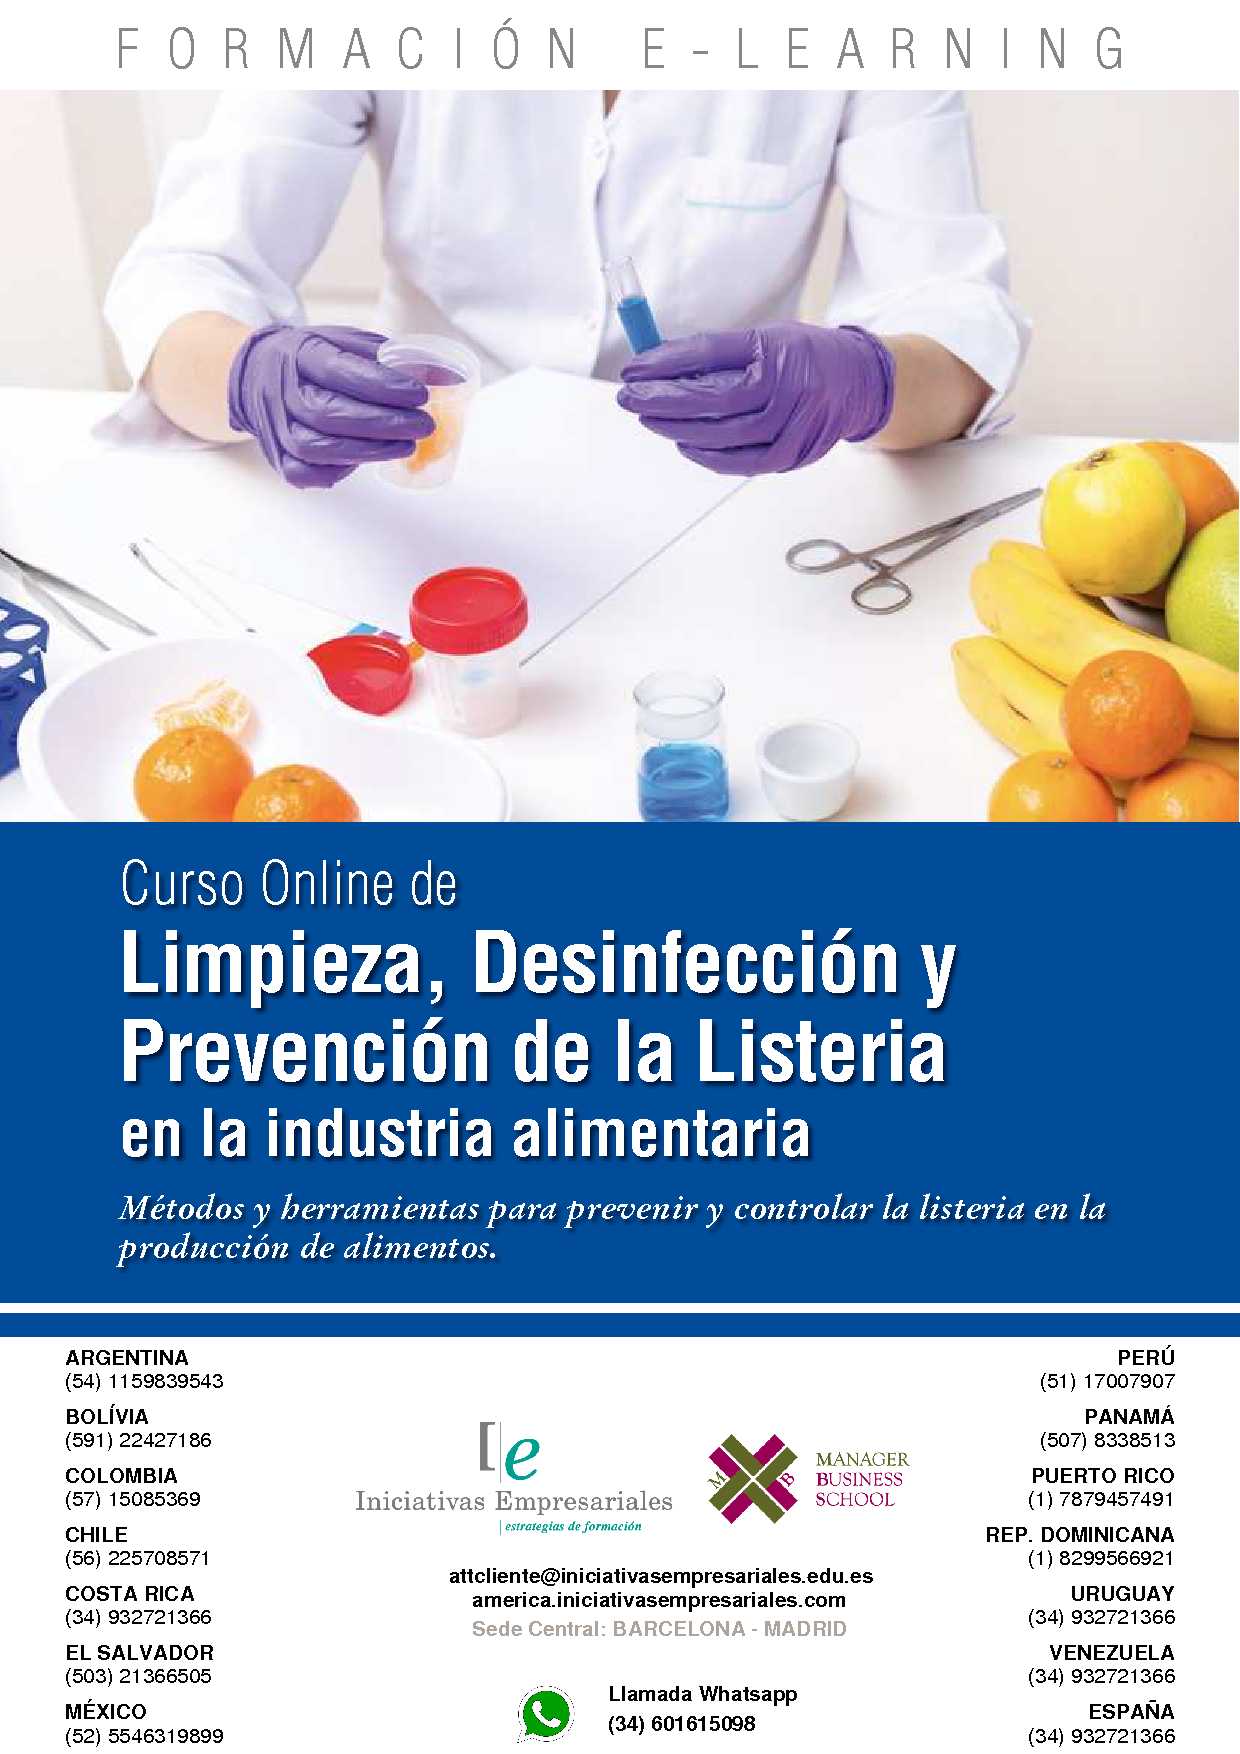 Limpieza, Desinfección y Prevención de la Listeria en la industria alimentaria